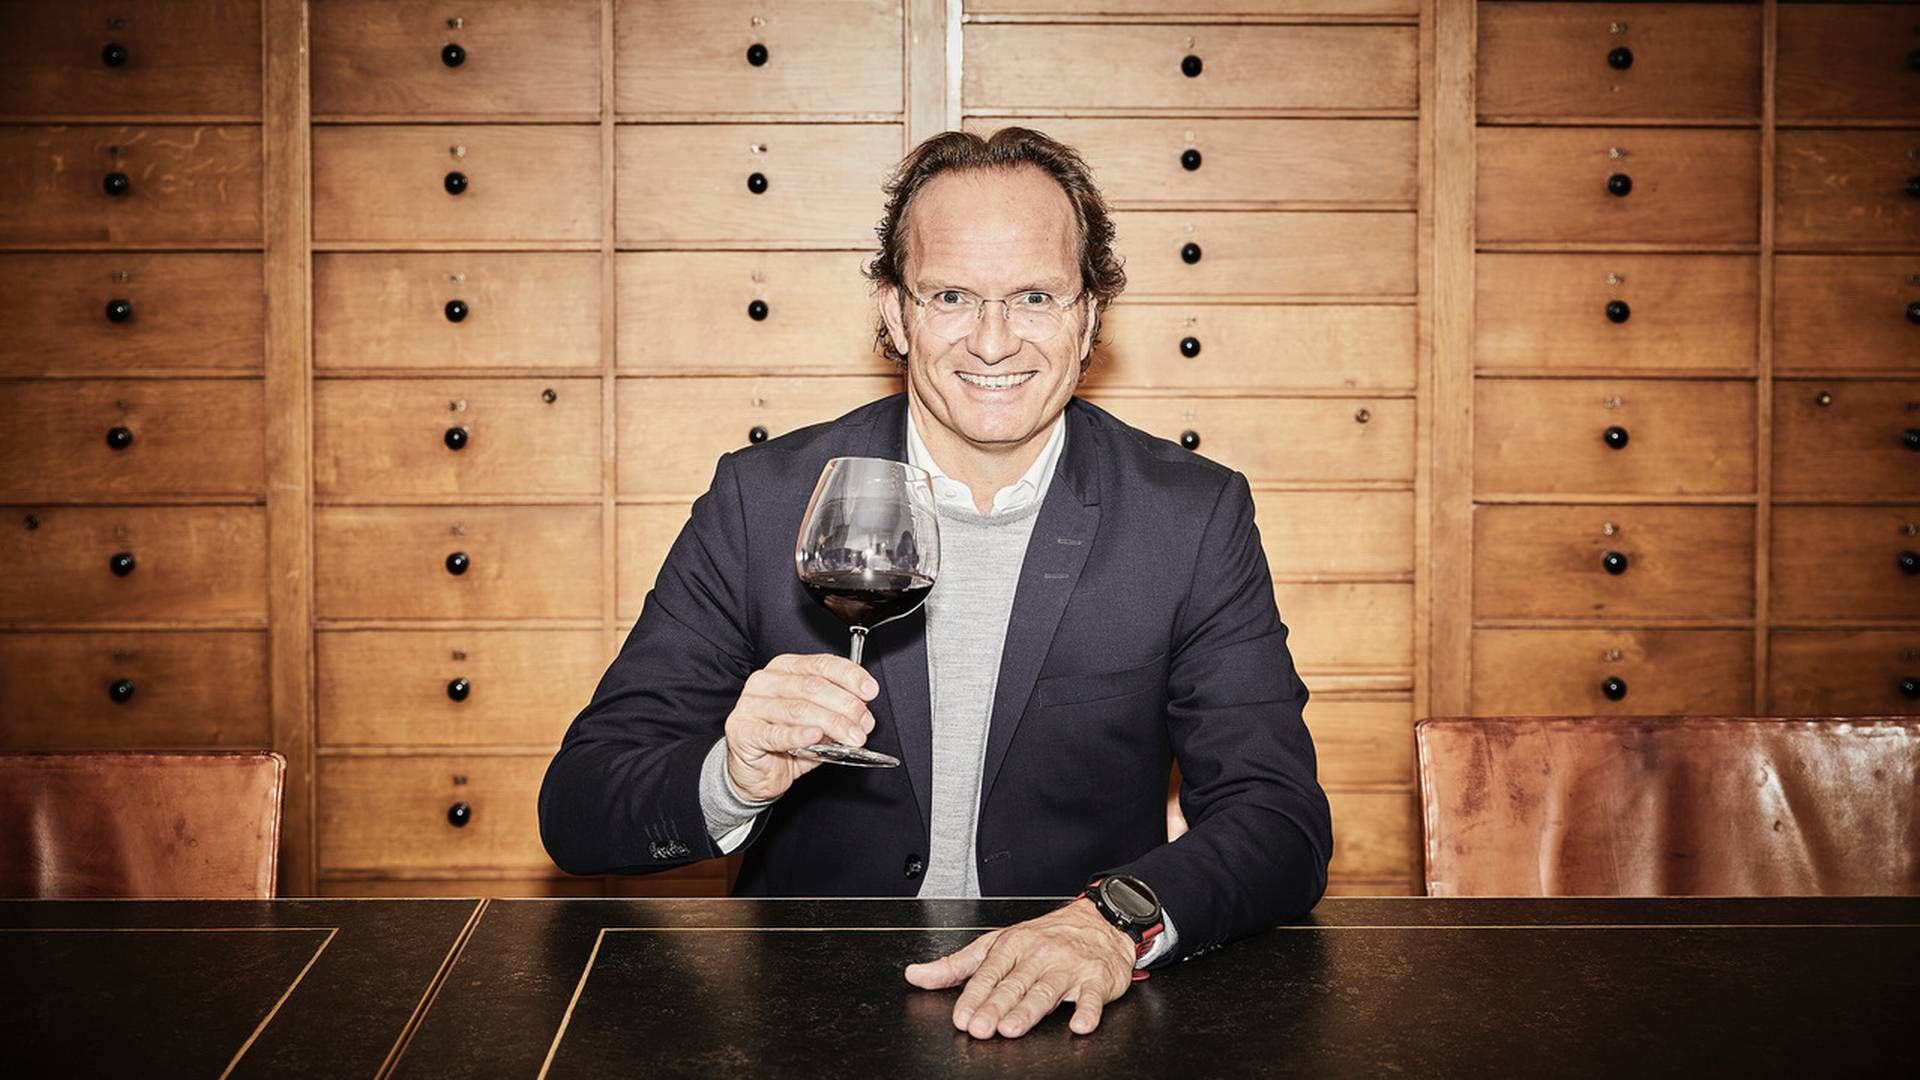 Admin. direktør Mads Stensgaard fortæller, at de i vinforhandleren Kjær & Sommerfeldt arbejder ud fra mantraet "tilbagegang er ikke en mulighed". | Foto: Pr / Kjær & Sommerfeldt